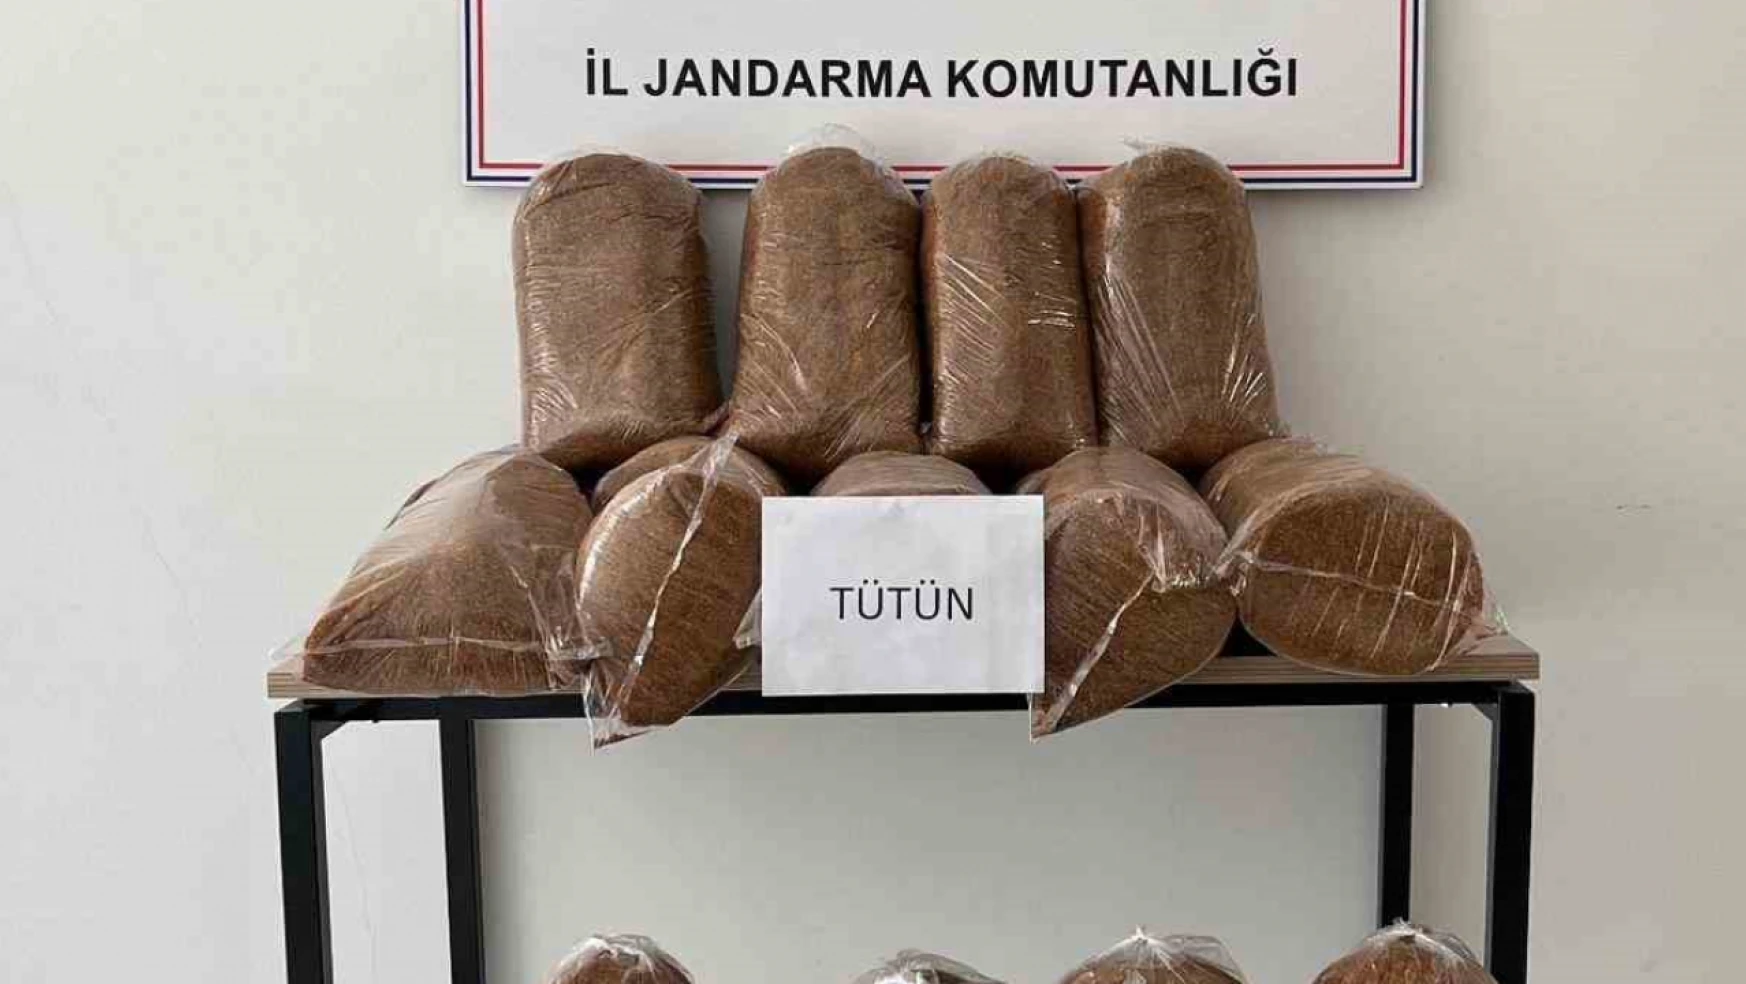 Elazığ'da 165 kilo kaçak tütün ele geçirildi